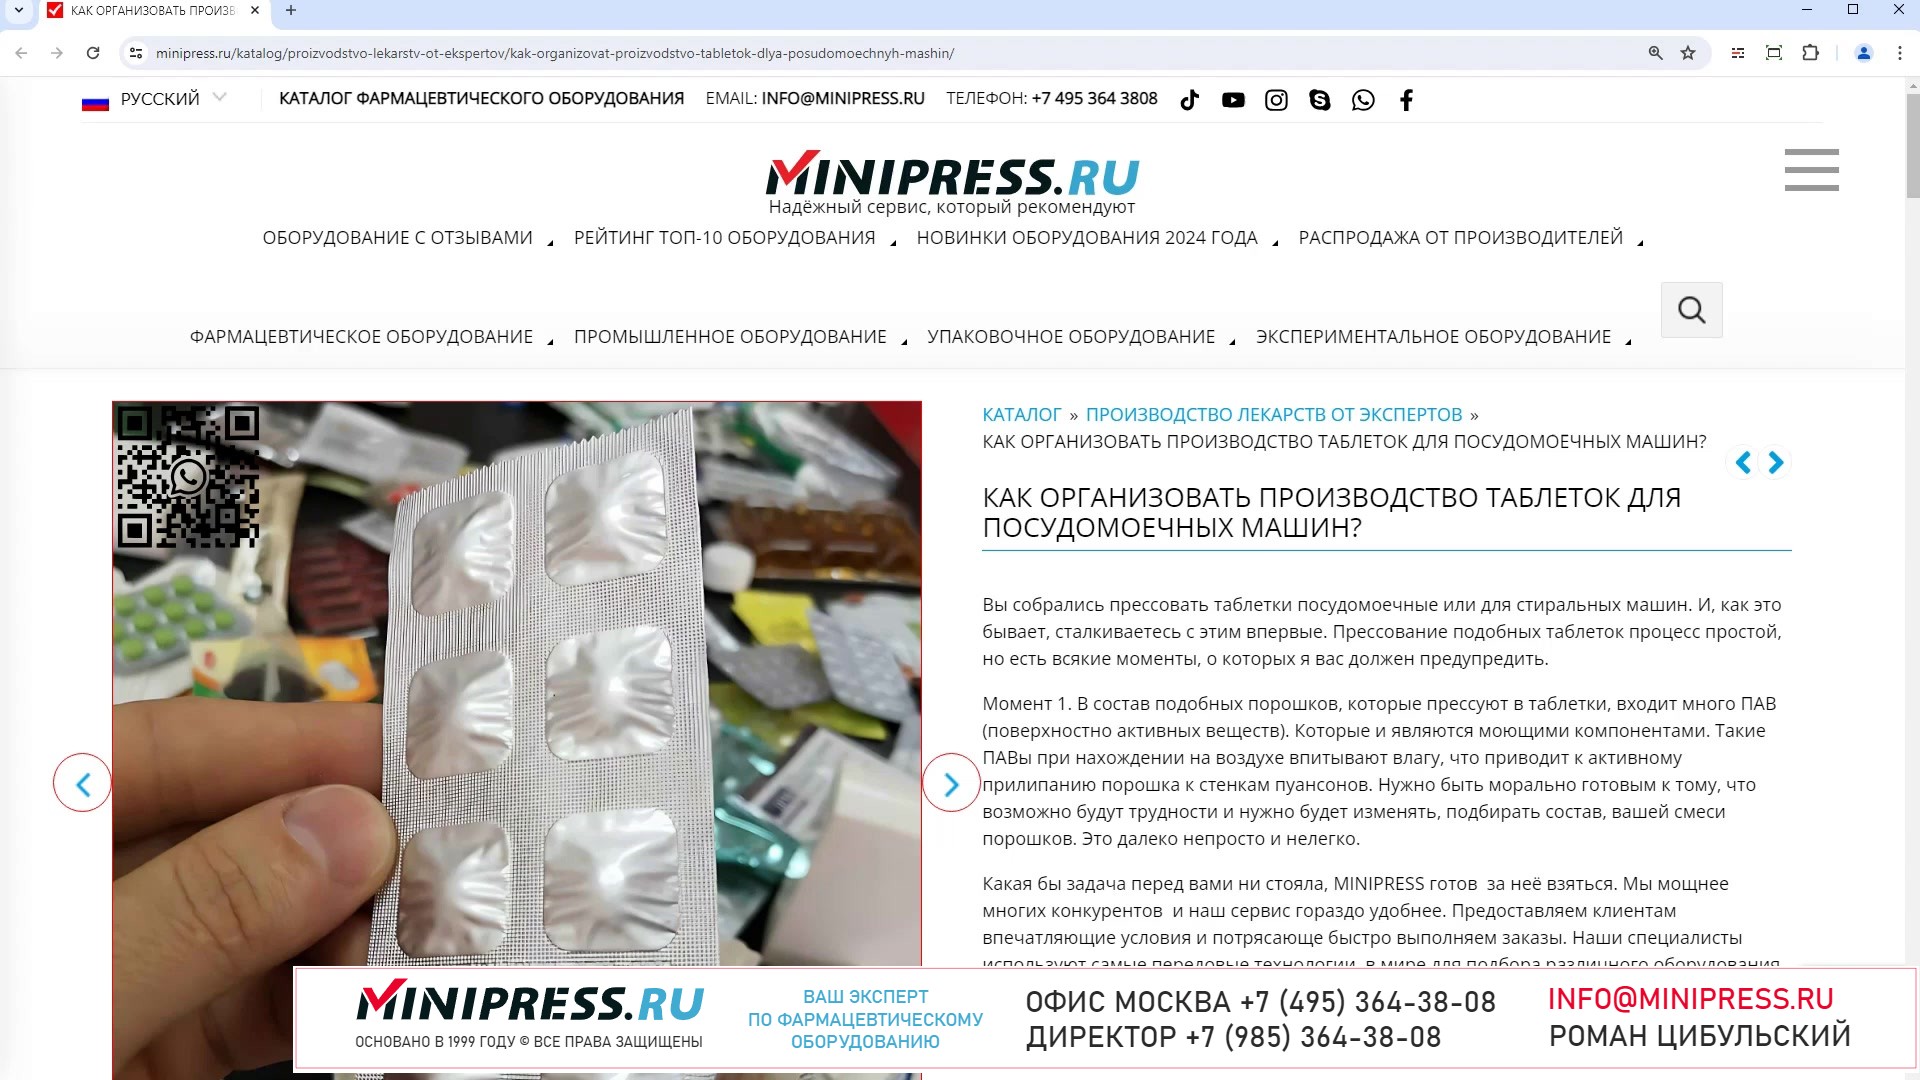 Minipress.ru Как организовать производство таблеток для посудомоечных машин